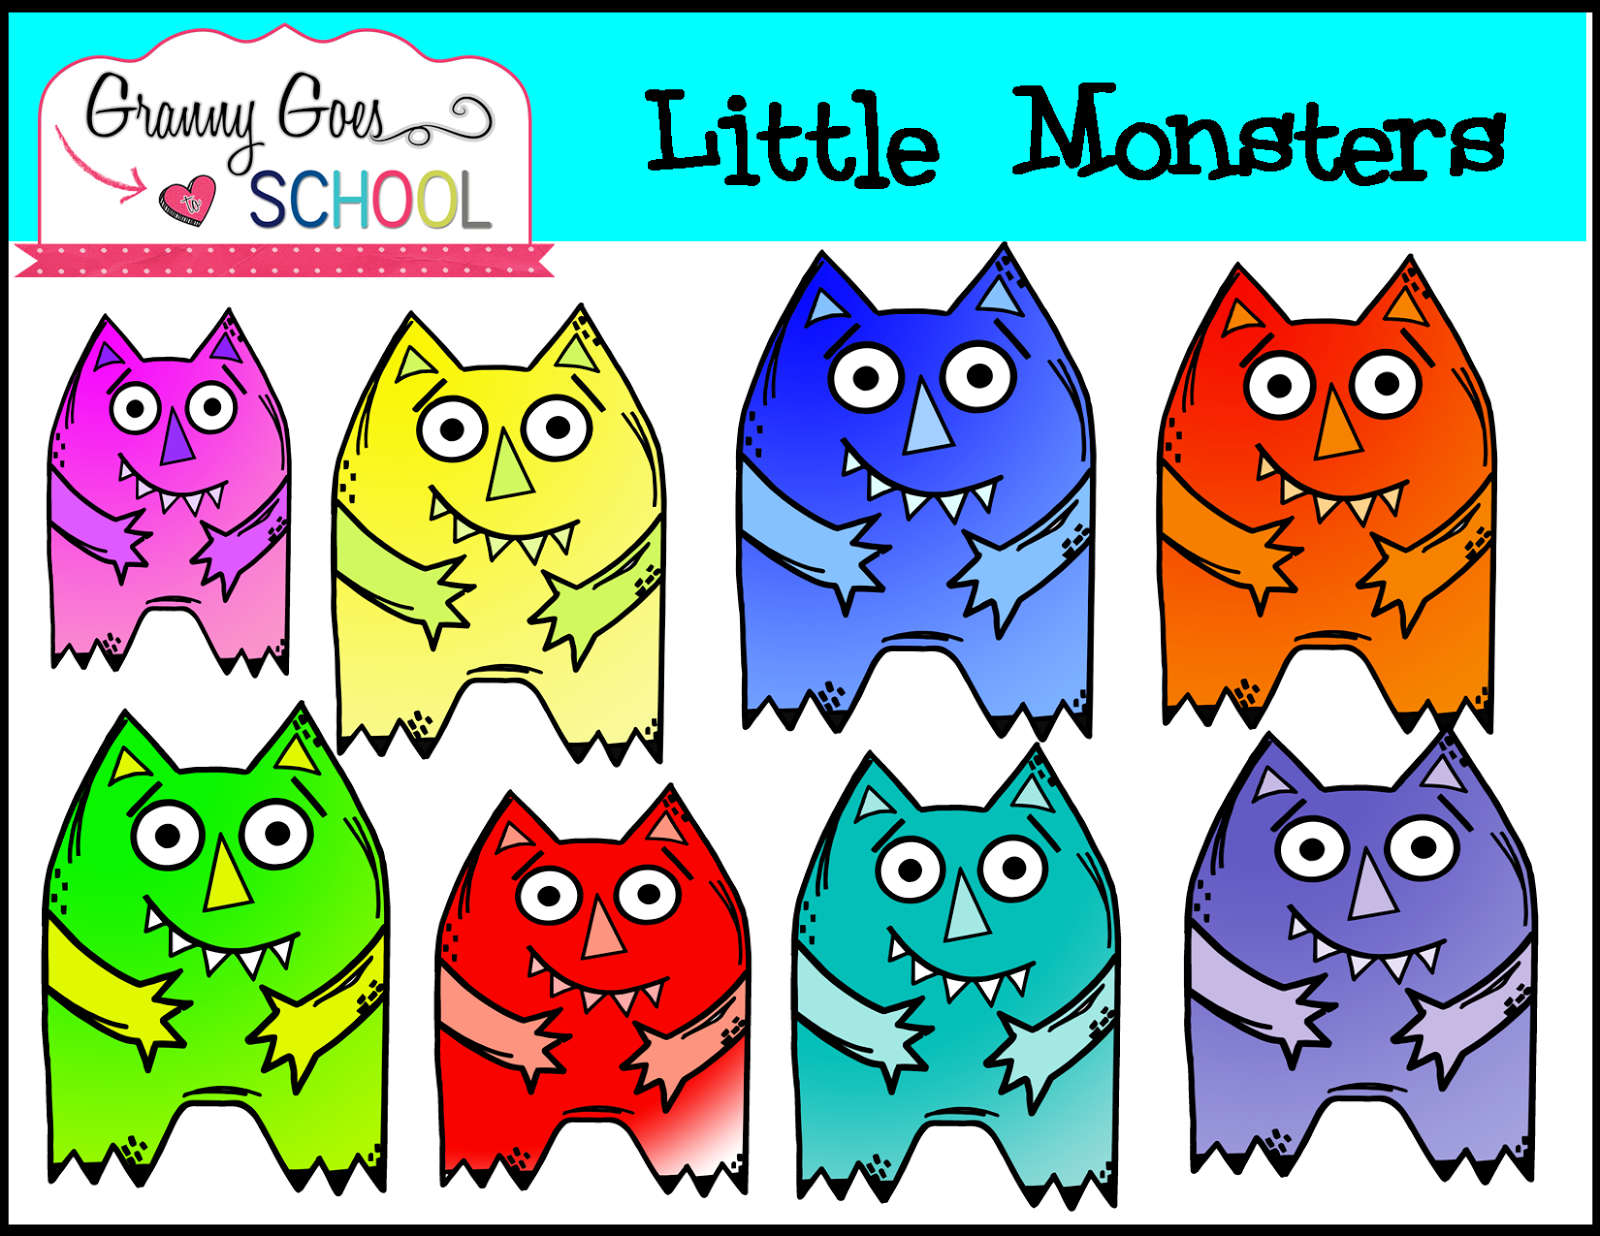 http://www.teacherspayteachers.com/Product/Little-Monsters-Clip-Art-1446044